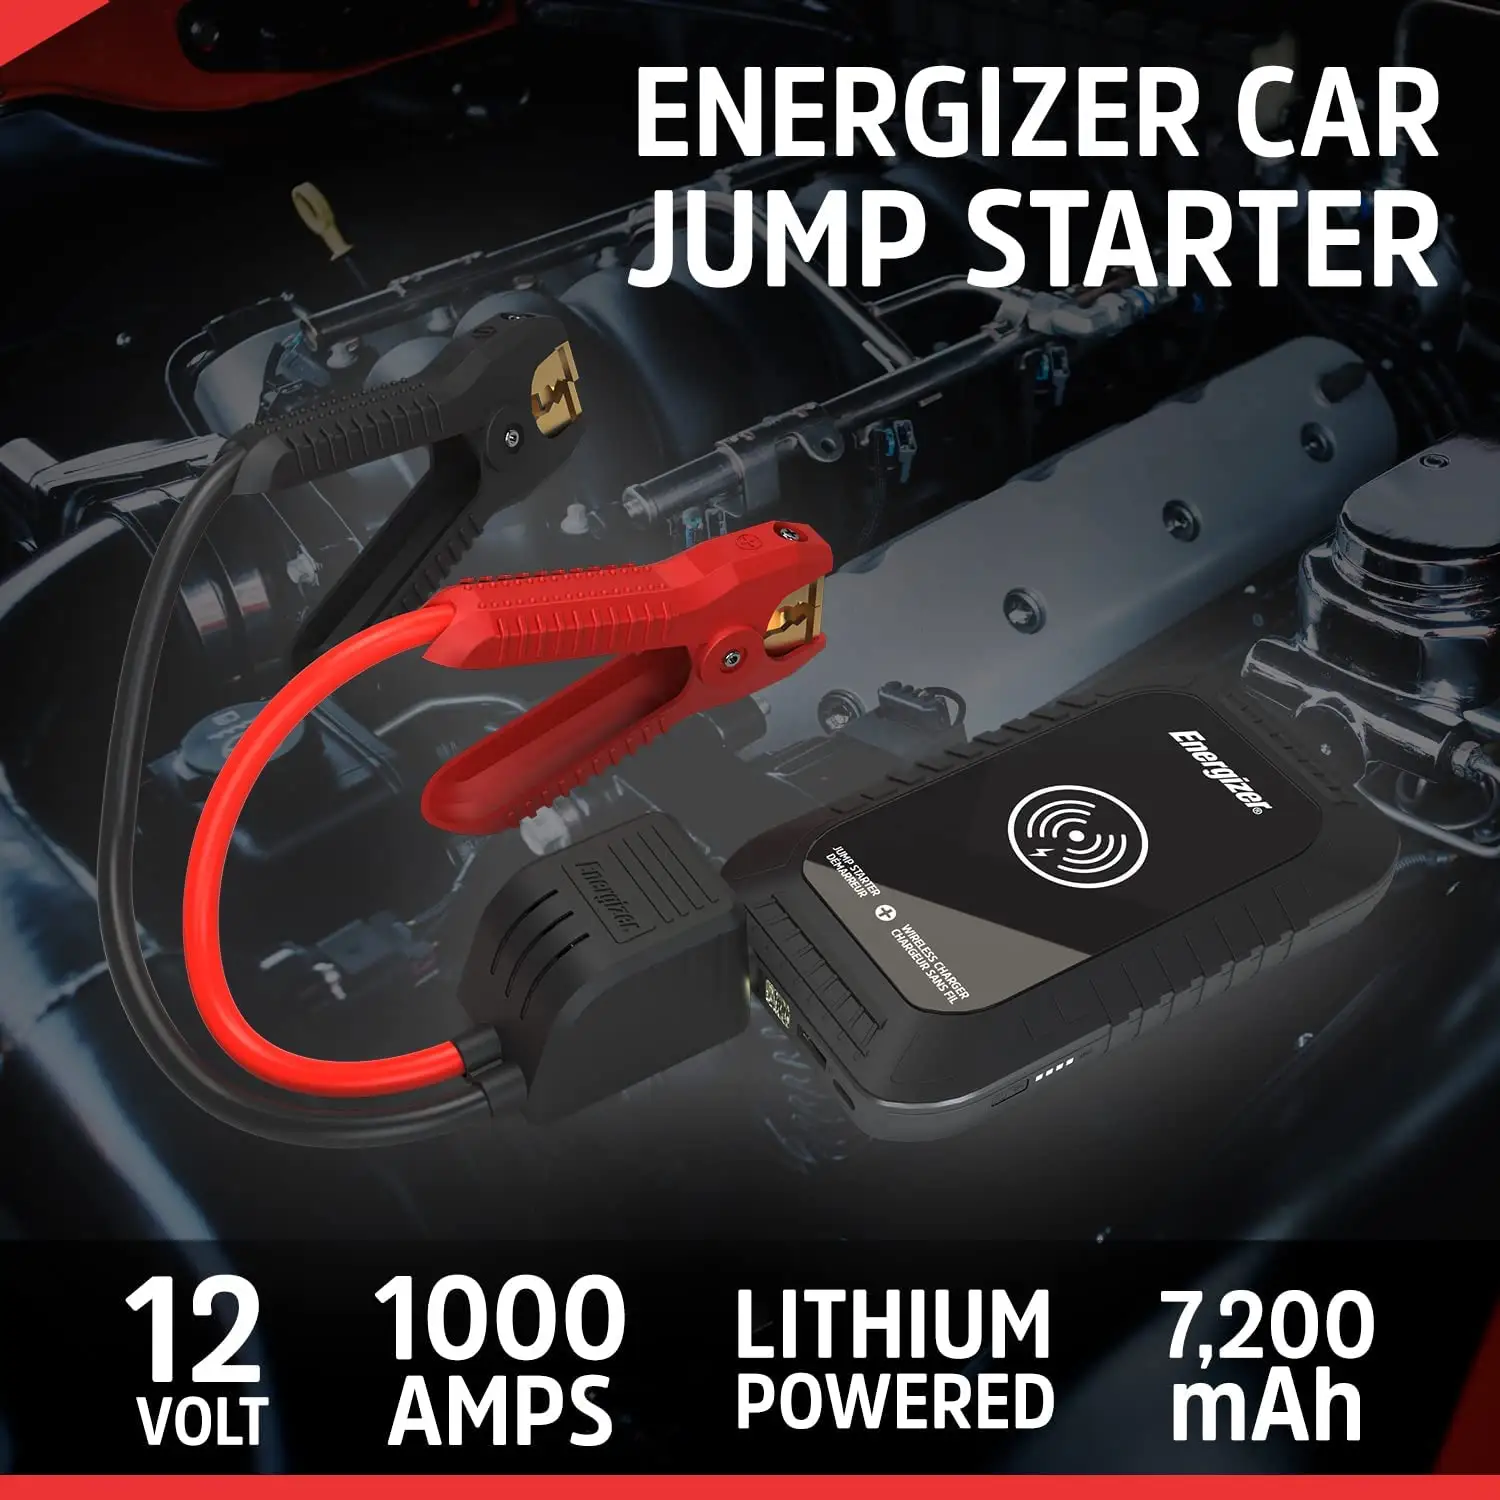 Energizerカーバッテリージャンプスターターパワーバンク12v 1000a 7200mahバッテリージャンプスターター、ワイヤレス充電付き